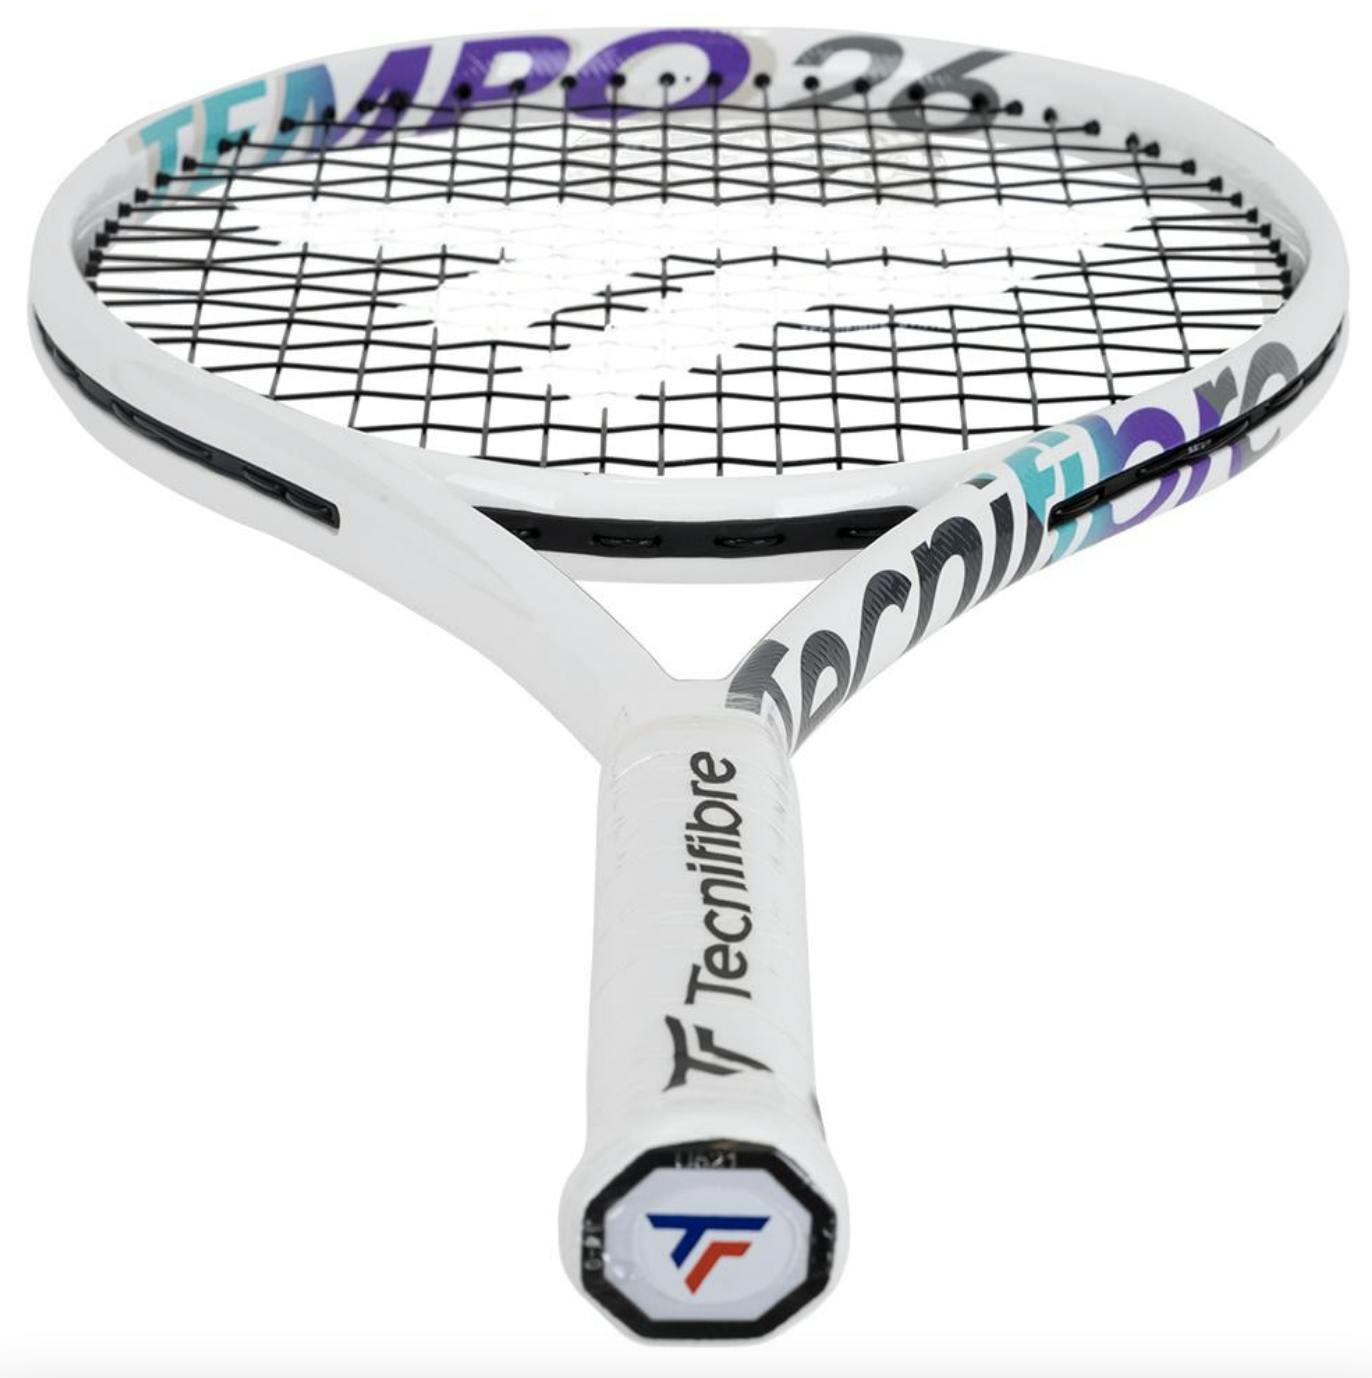 Tecnifibre Tempo 26 Junior Racquet (2022) · Strung